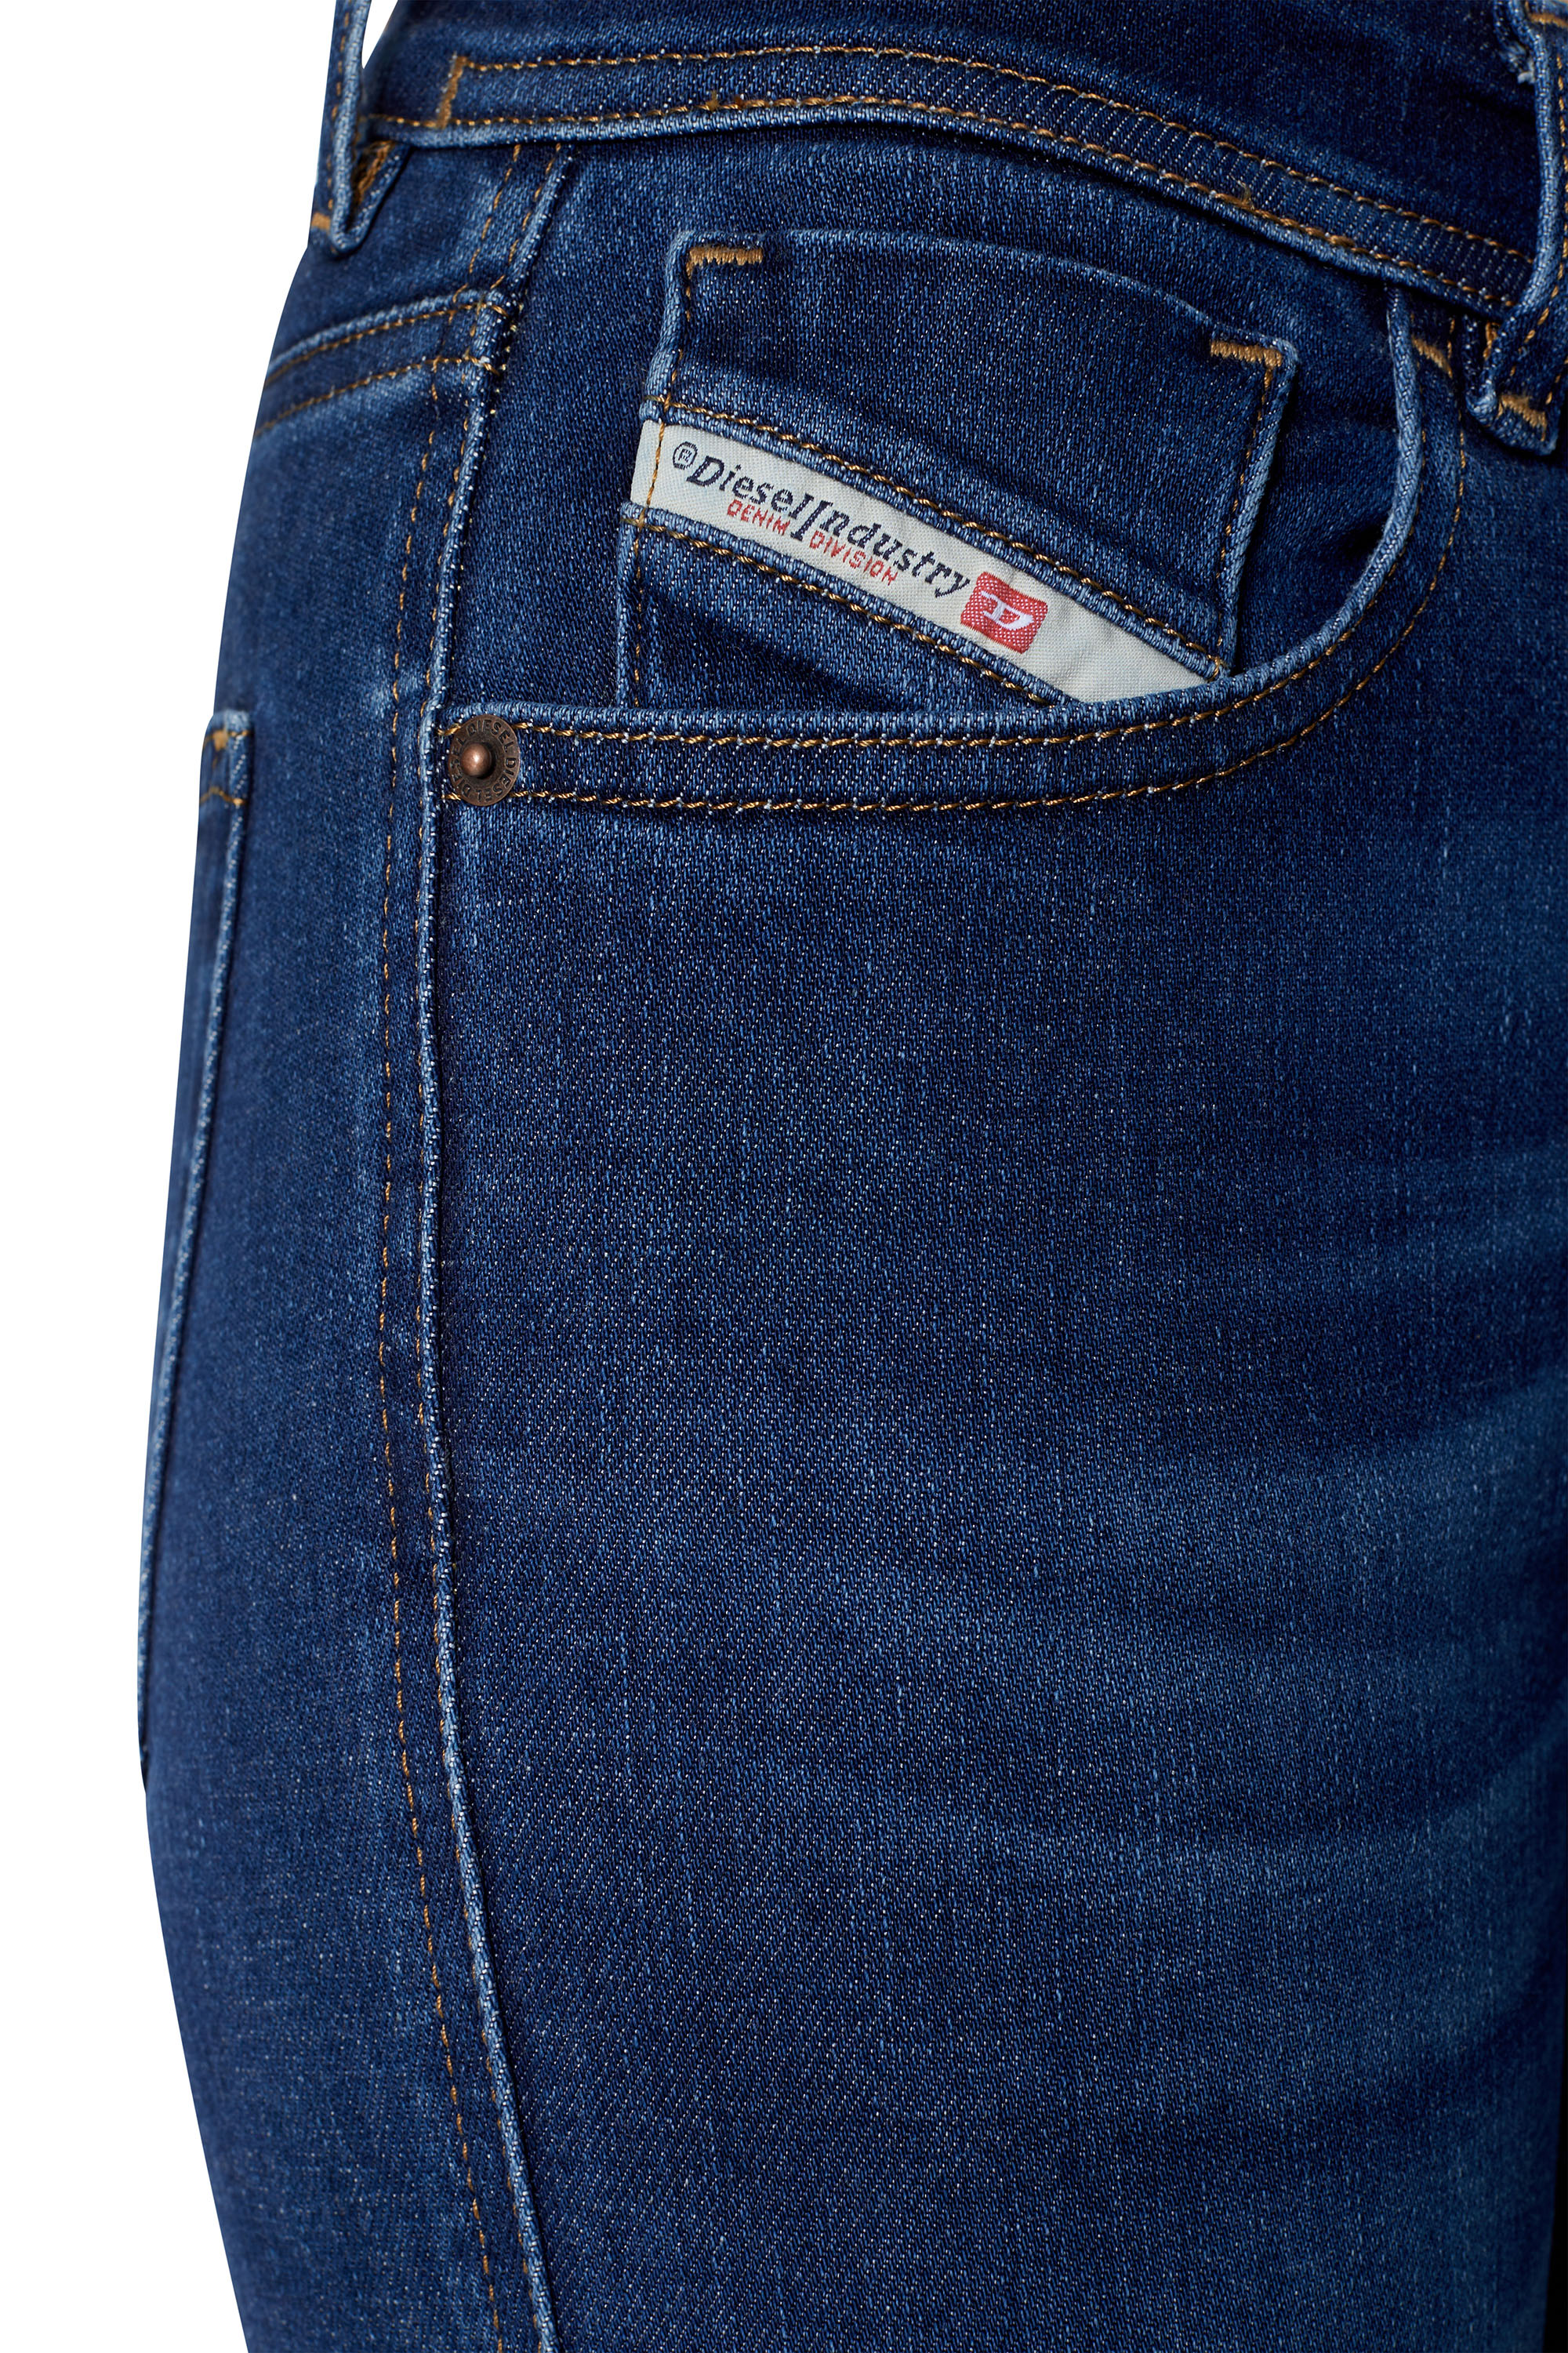 Diesel - Super skinny Jeans 2017 Slandy 09C19,  - Image 4